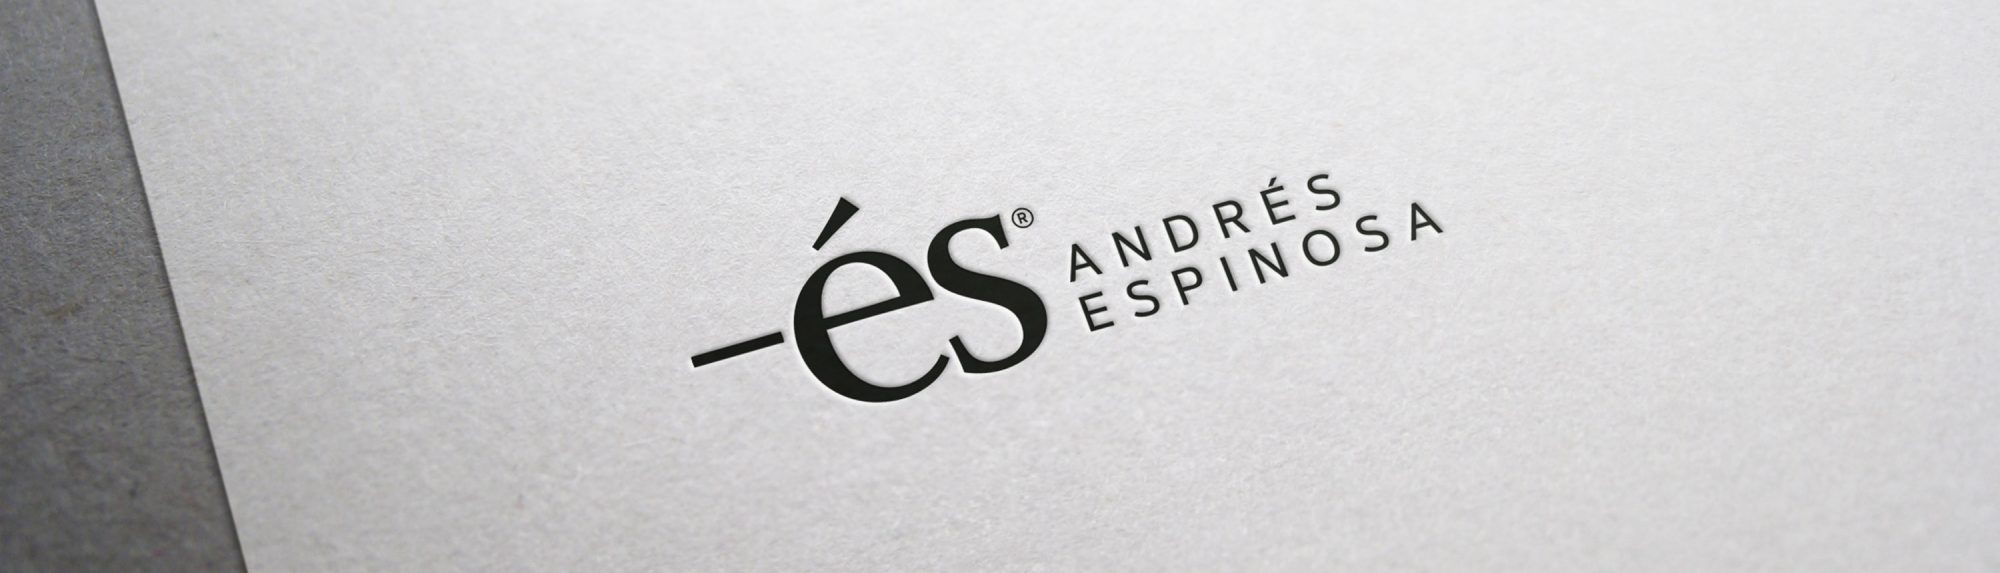 Andrés Espinosa cabecera logotipo